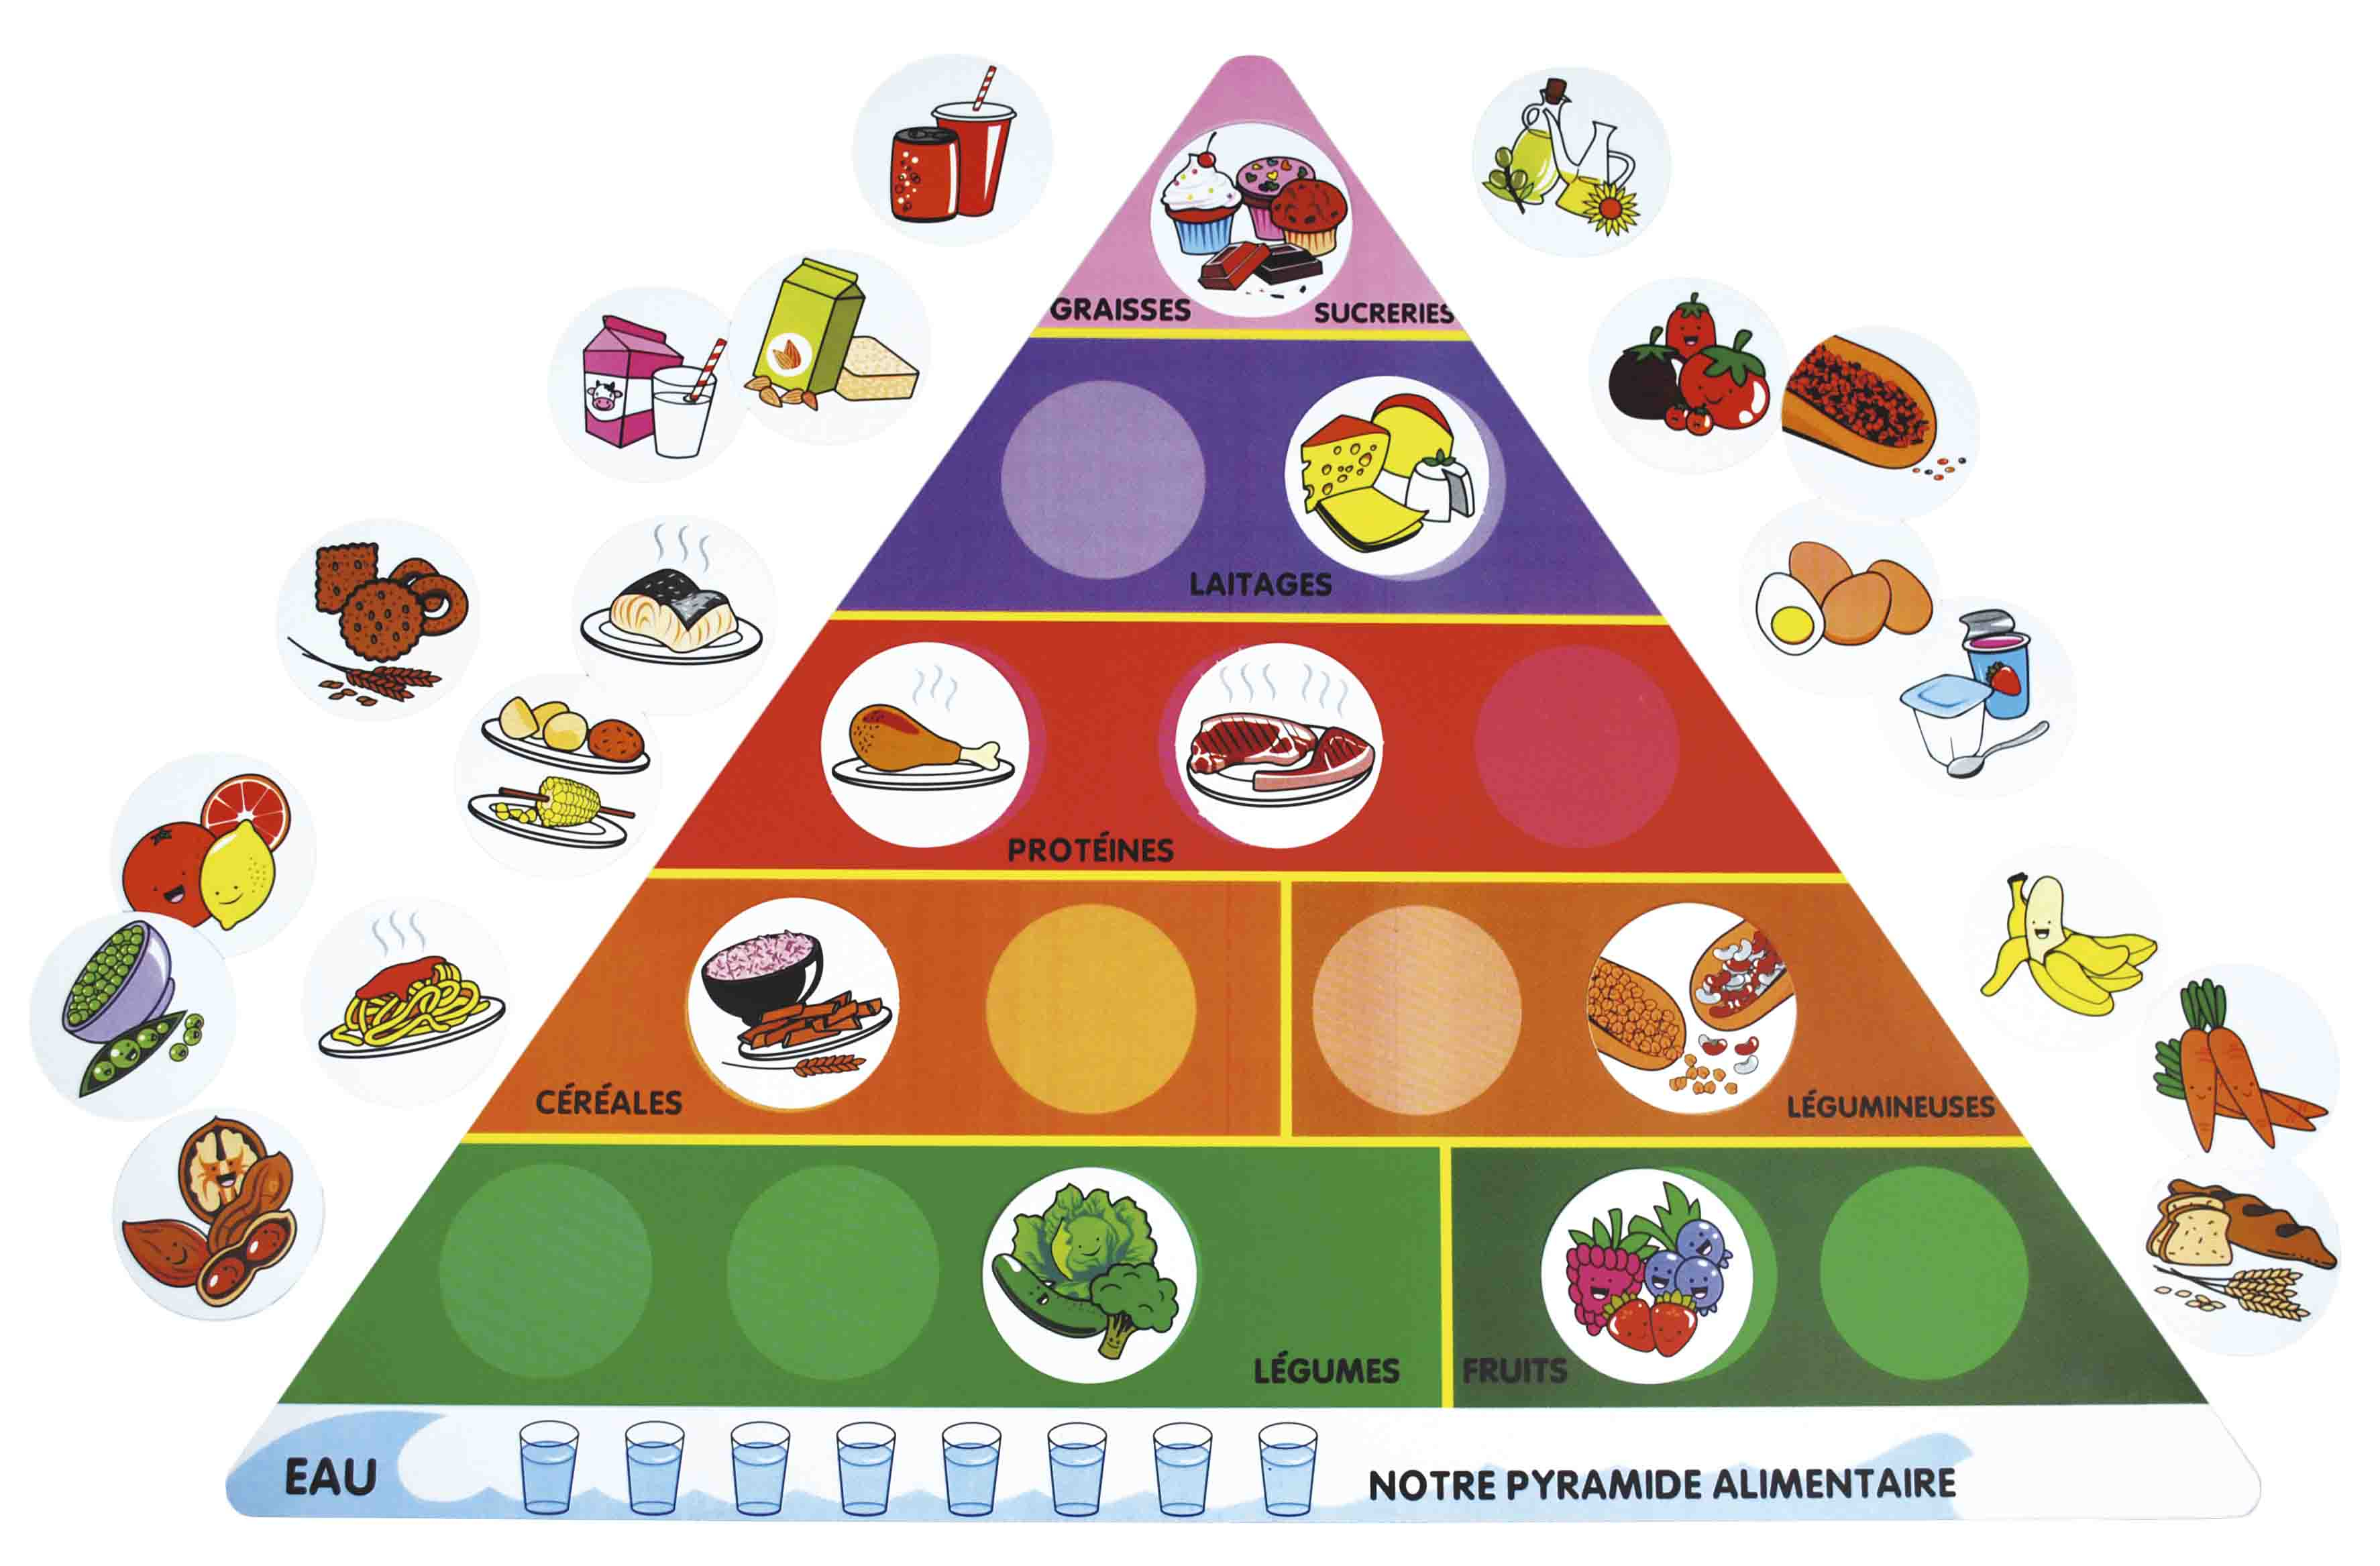 La Pyramide alimentaire